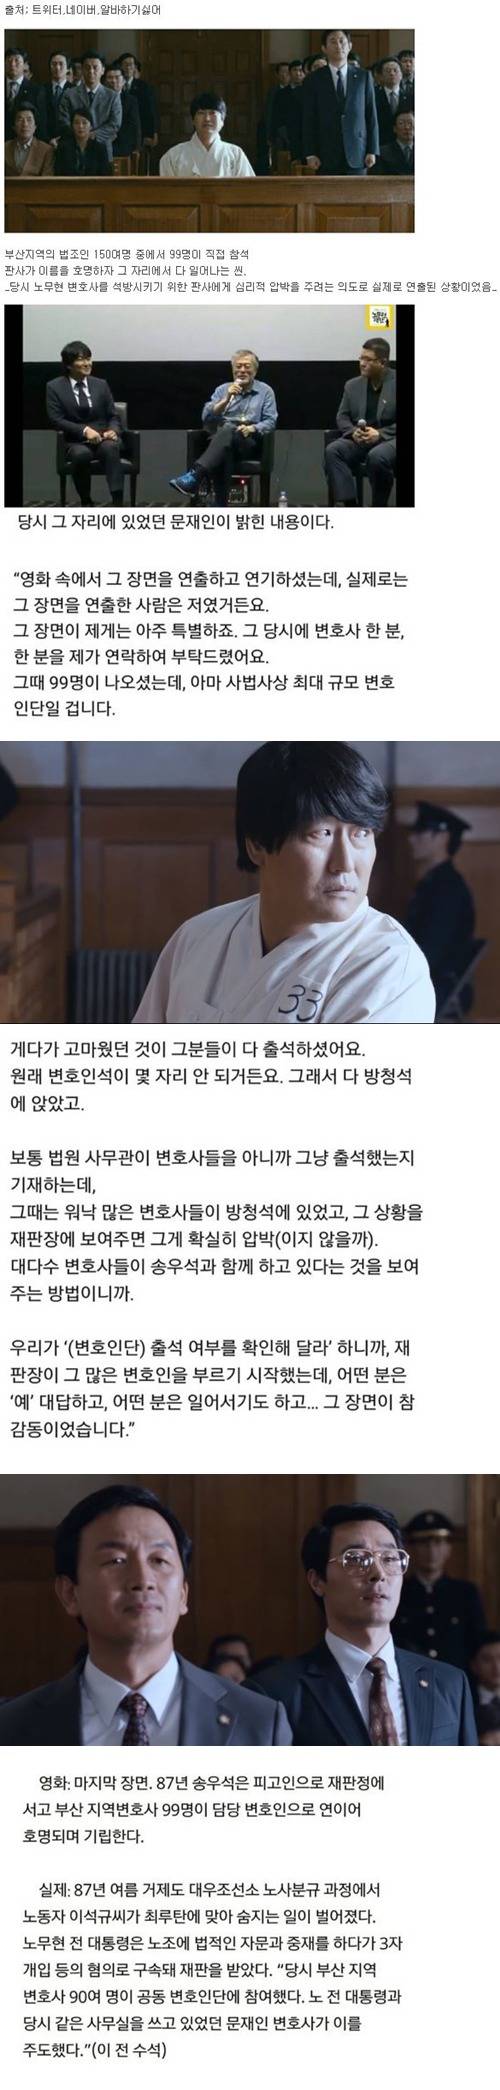 영화 '변호인' 마지막씬 실제 연출자 JPG | 인스티즈